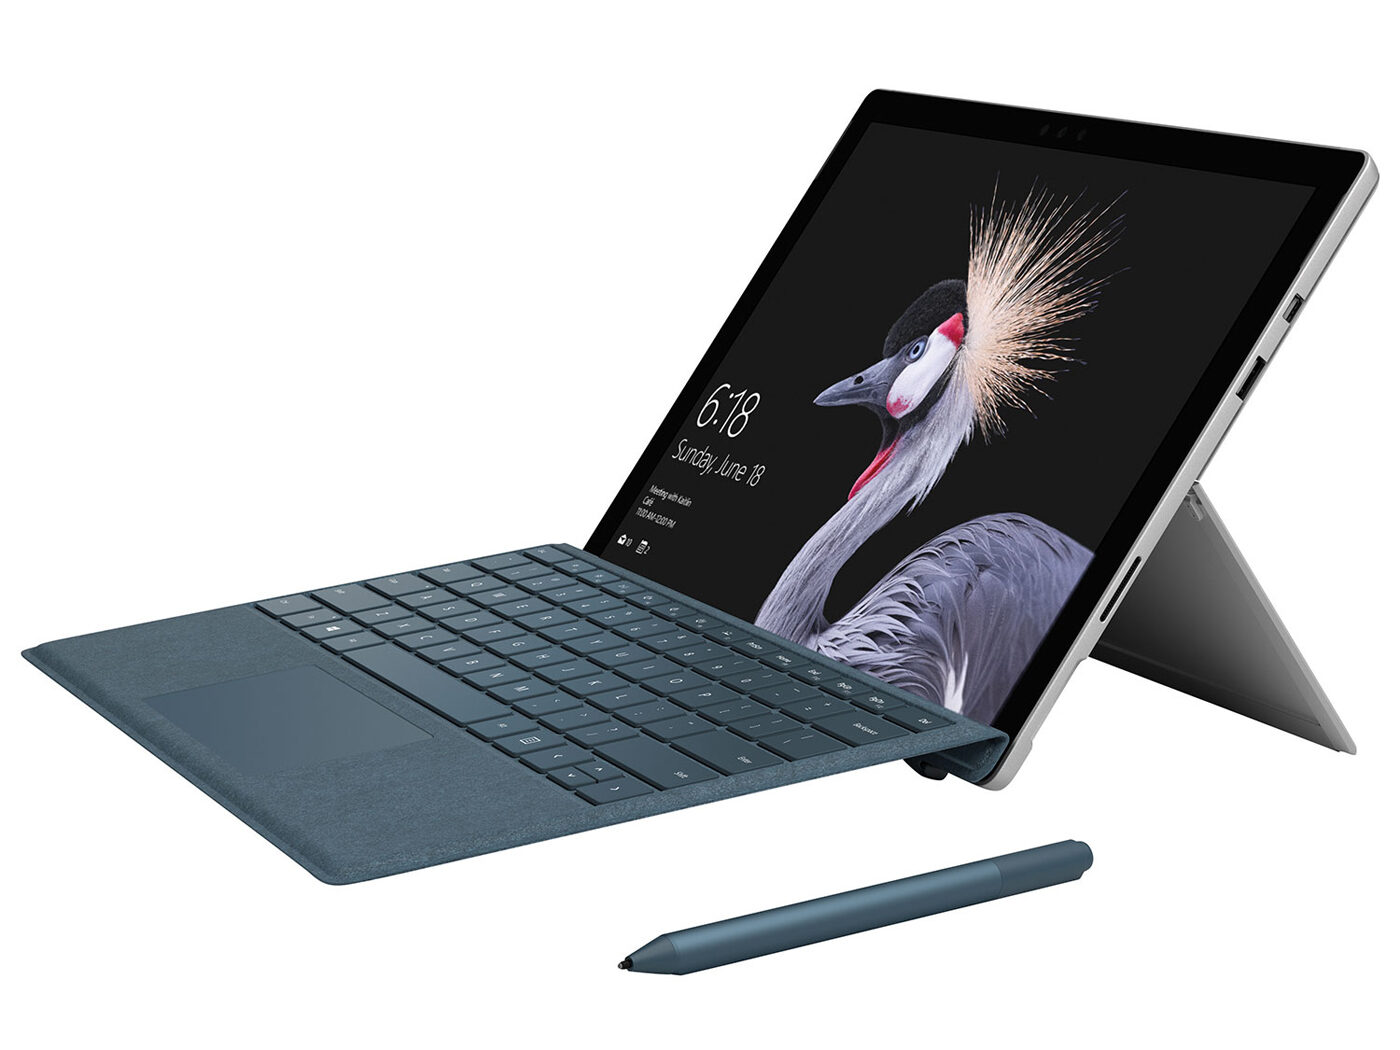 Dieses Chromebook im Surface Pro-Stil ist derzeit 130 € günstiger